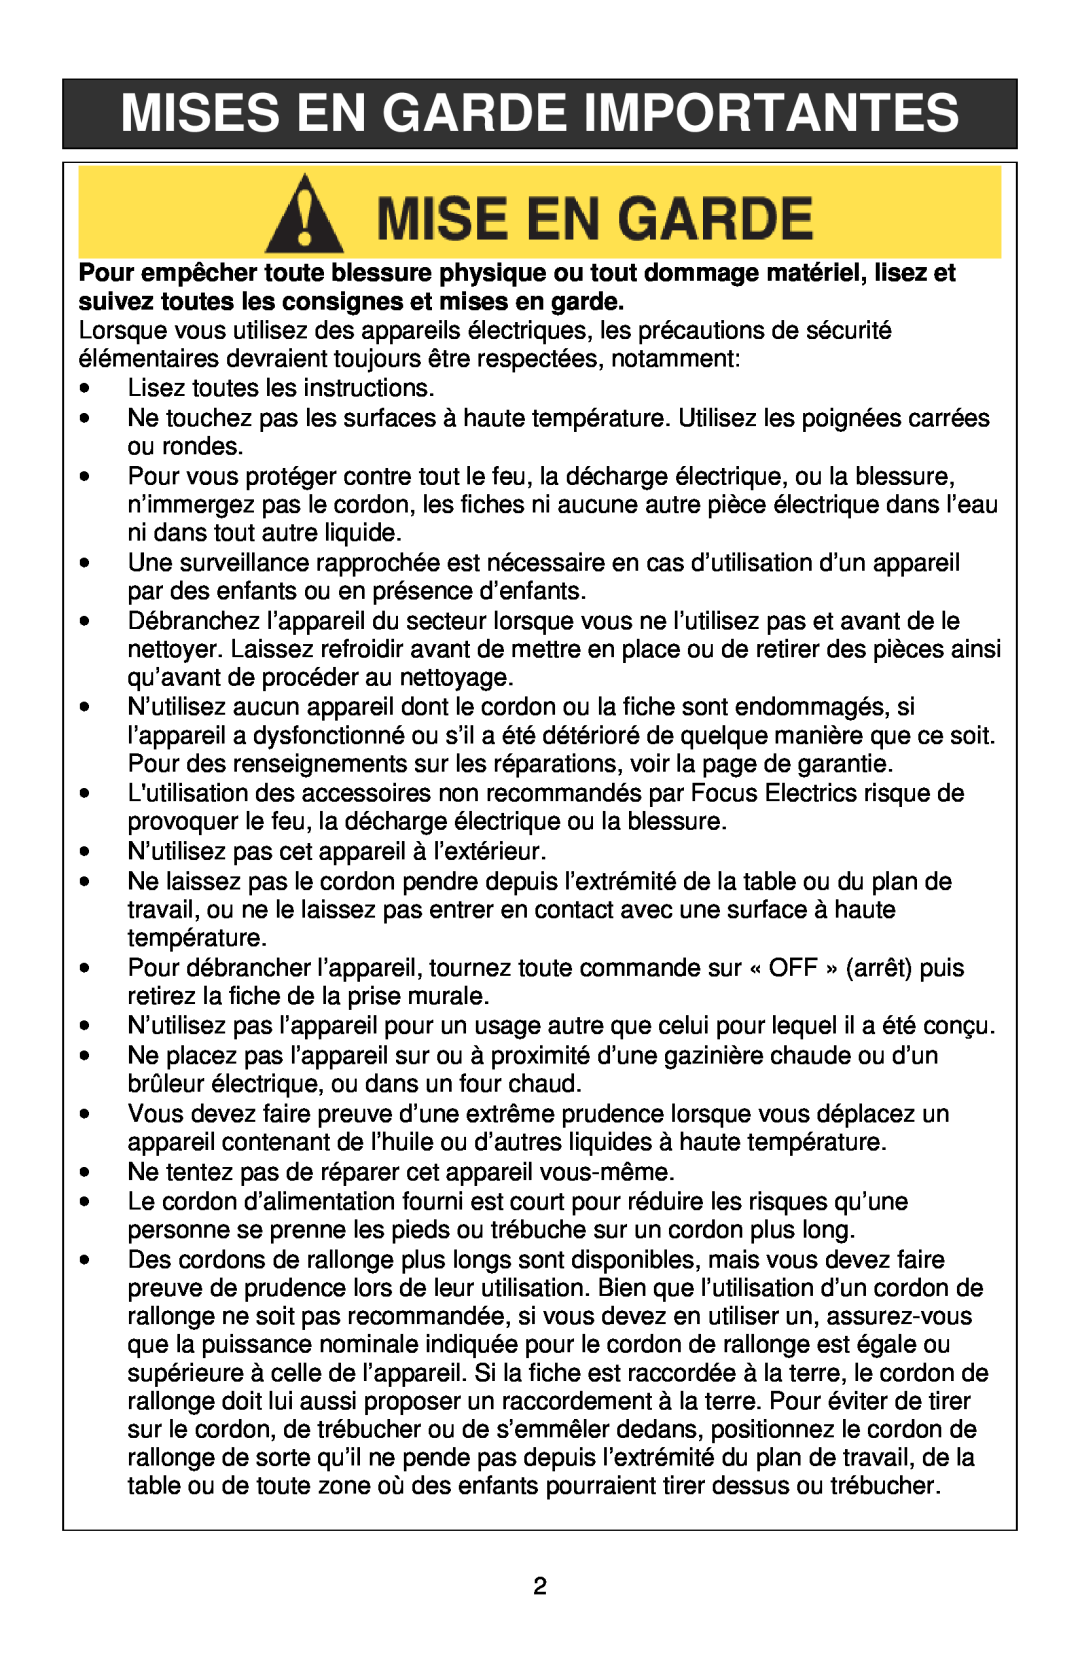 West Bend 88010, L5808 instruction manual Mises En Garde Importantes 